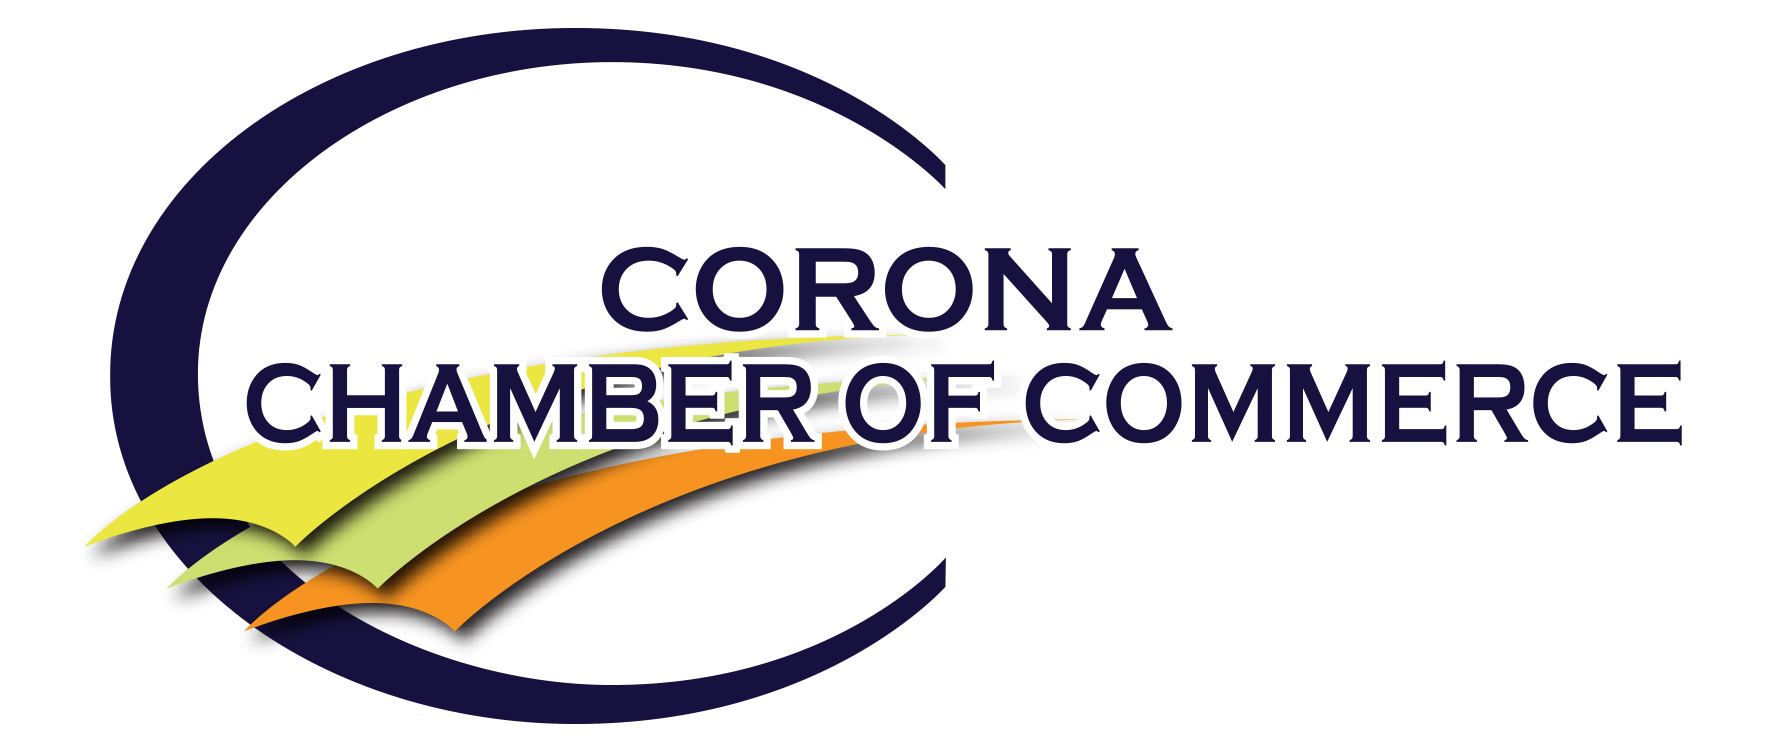 Corona Chamber of Commerce